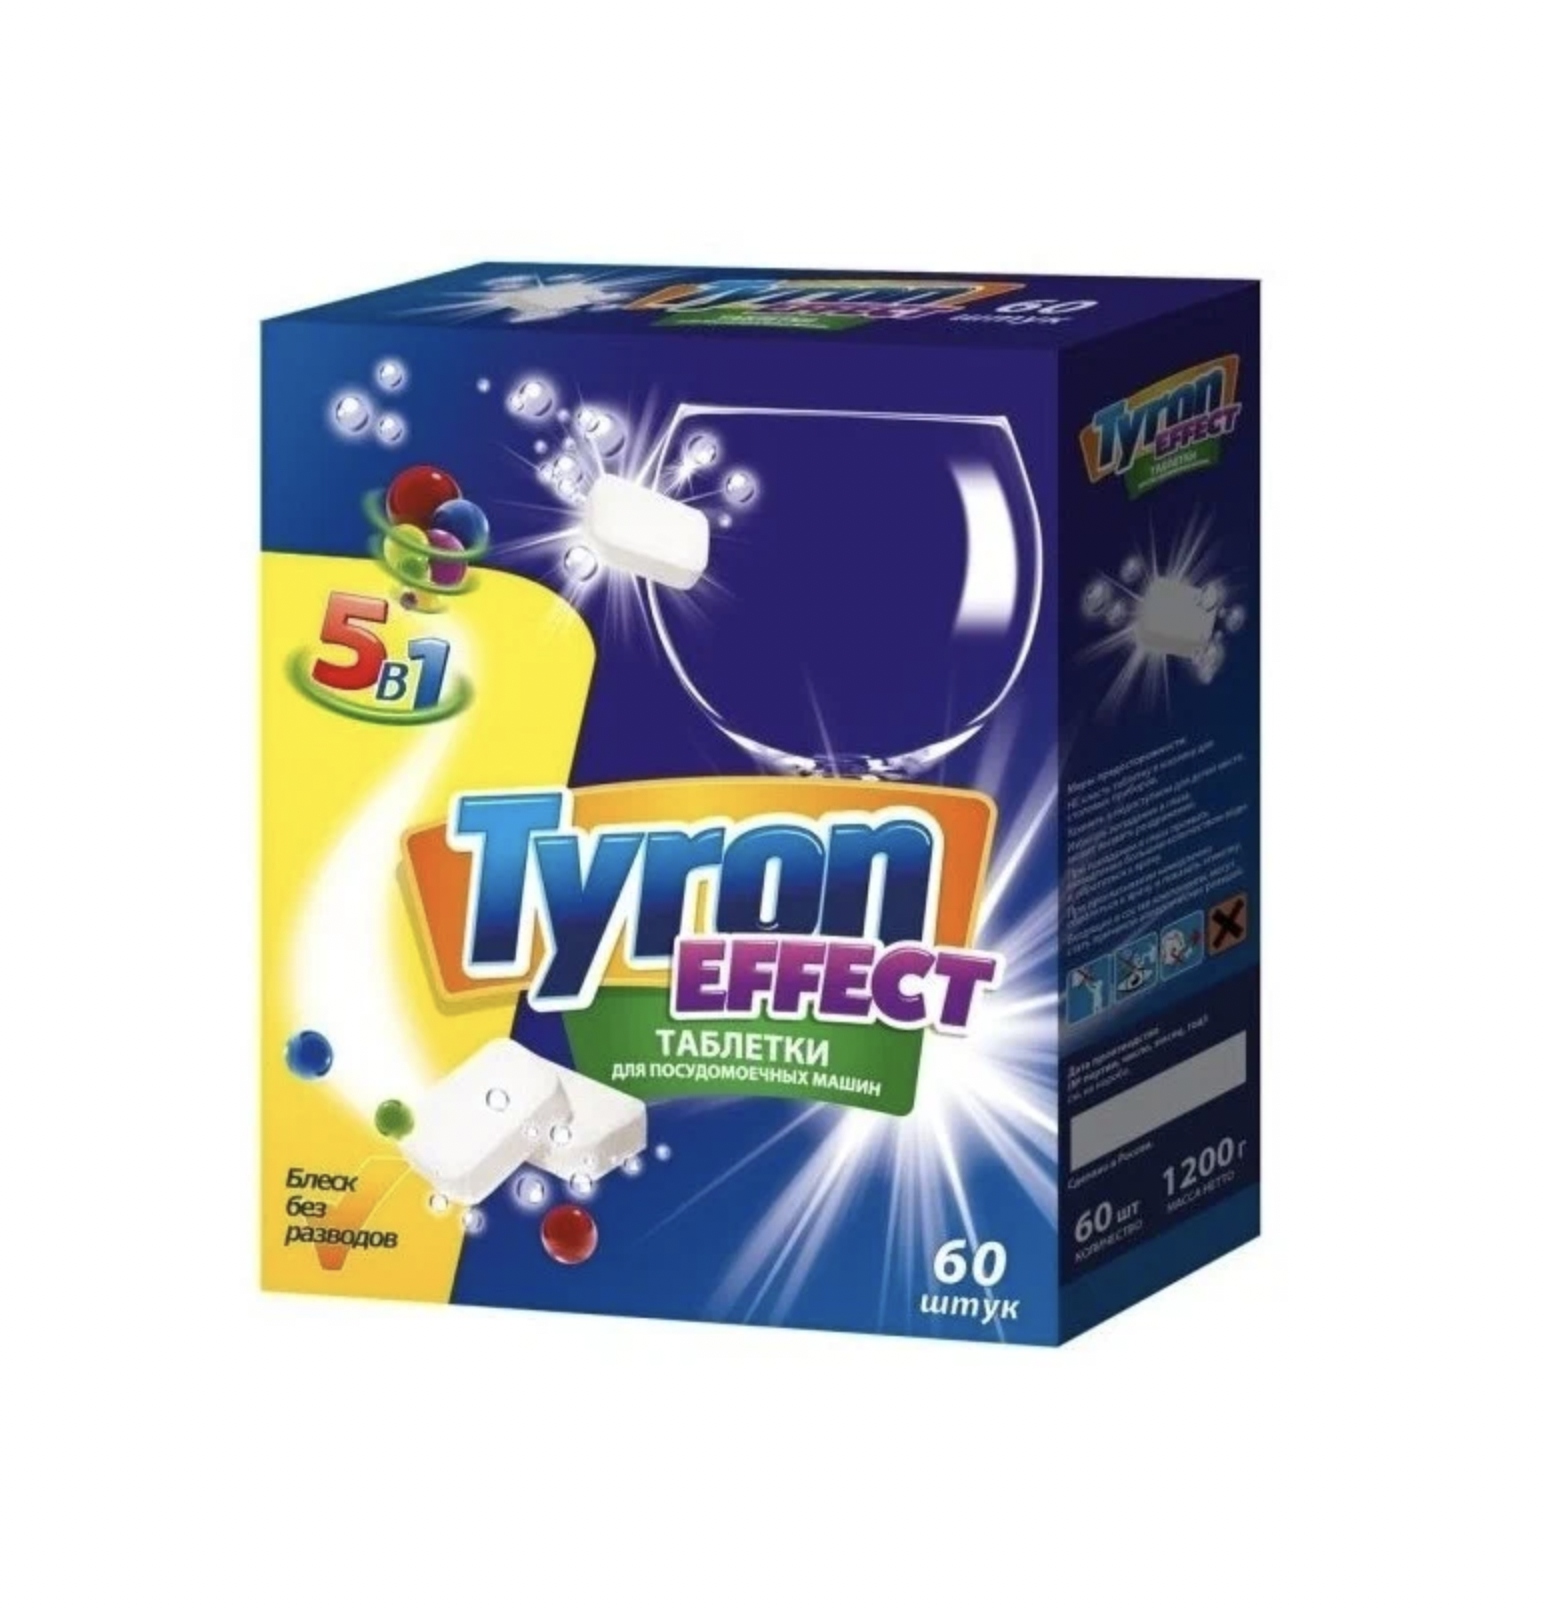    / Tyron Effect -     51, 60 